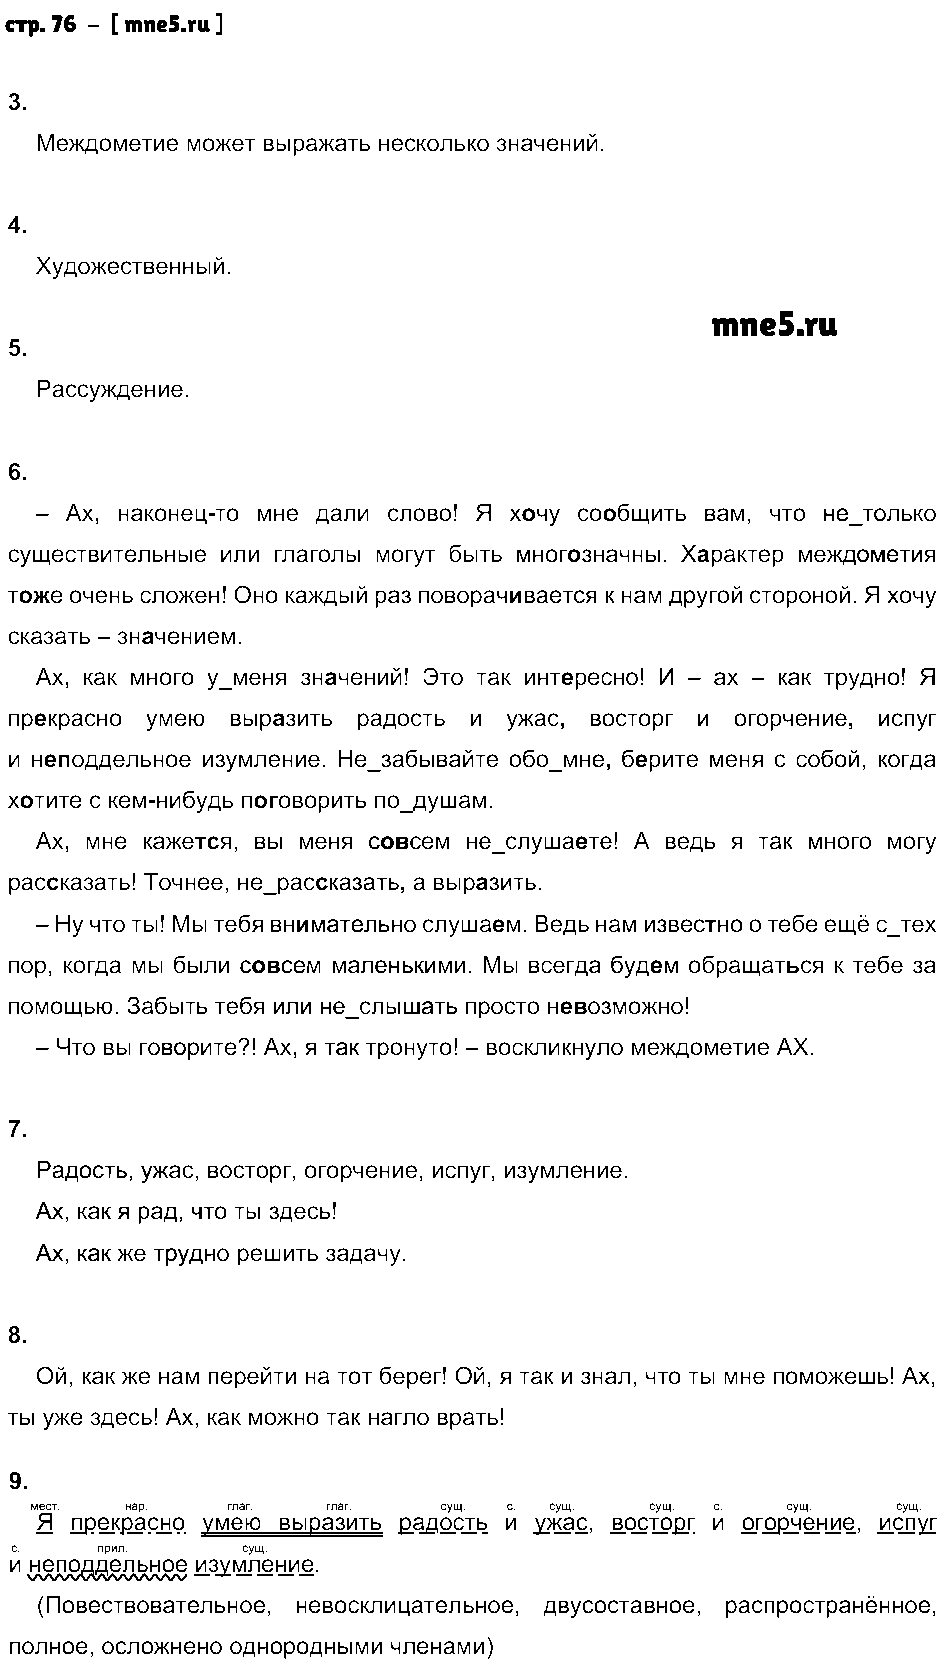 ГДЗ Русский язык 7 класс - стр. 76